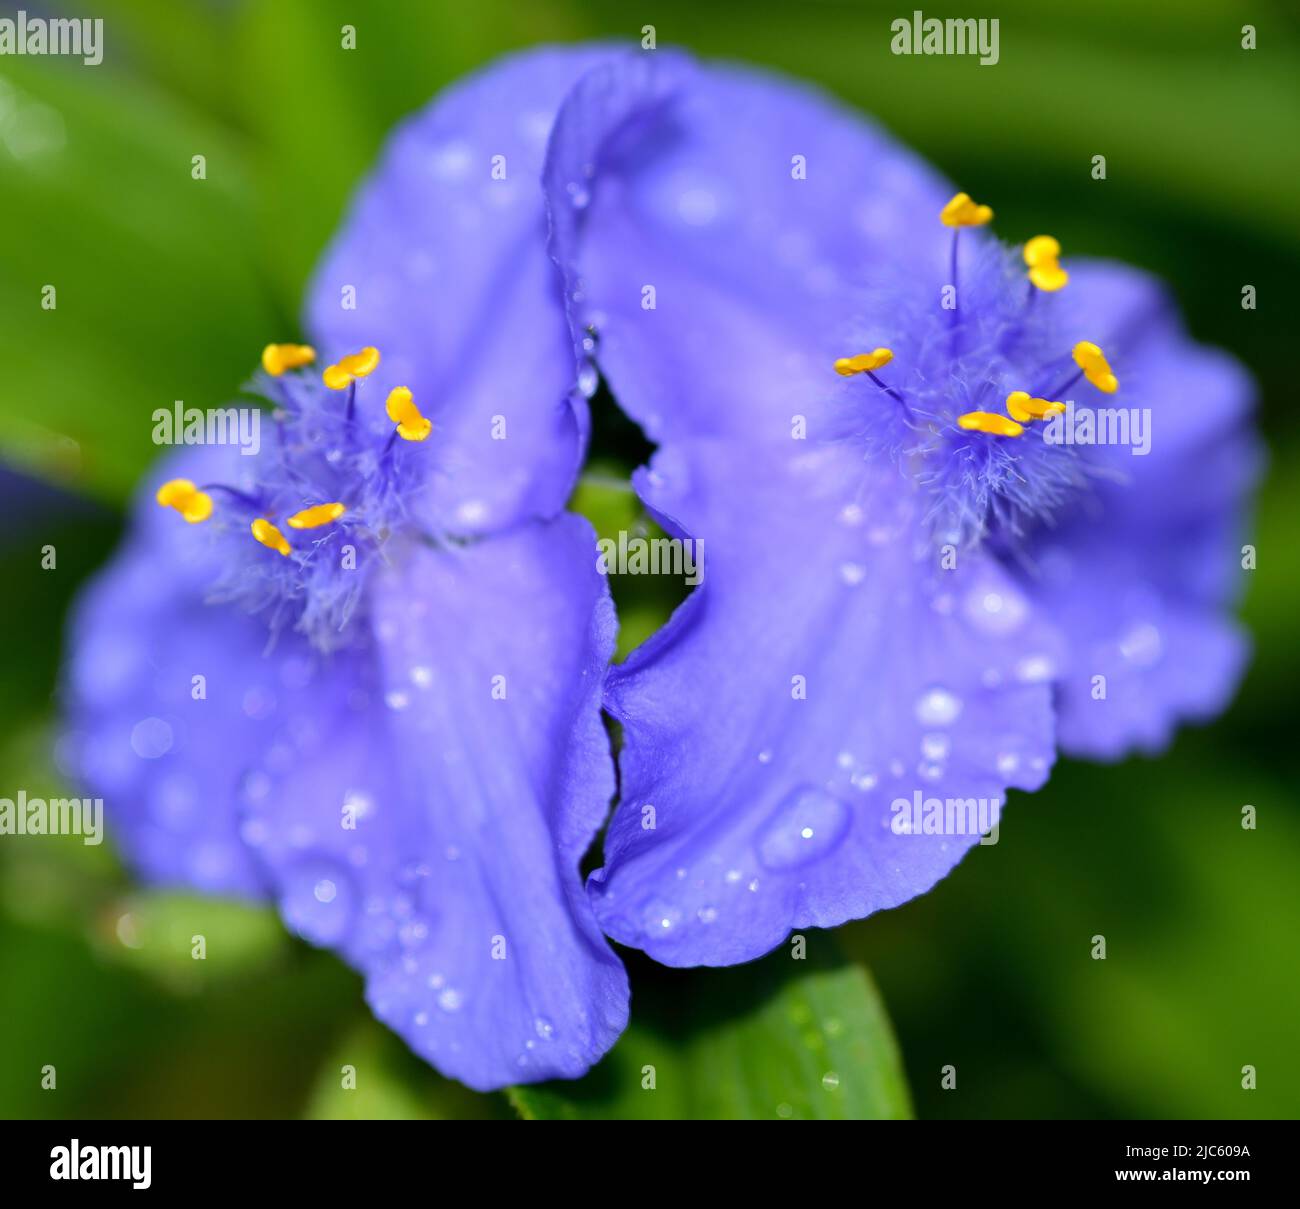 Image de gros plan des fleurs d'araignée bleue/pourpre (Tradescantia) prises après une douche de pluie montrant des étamines jaunes au centre. Banque D'Images